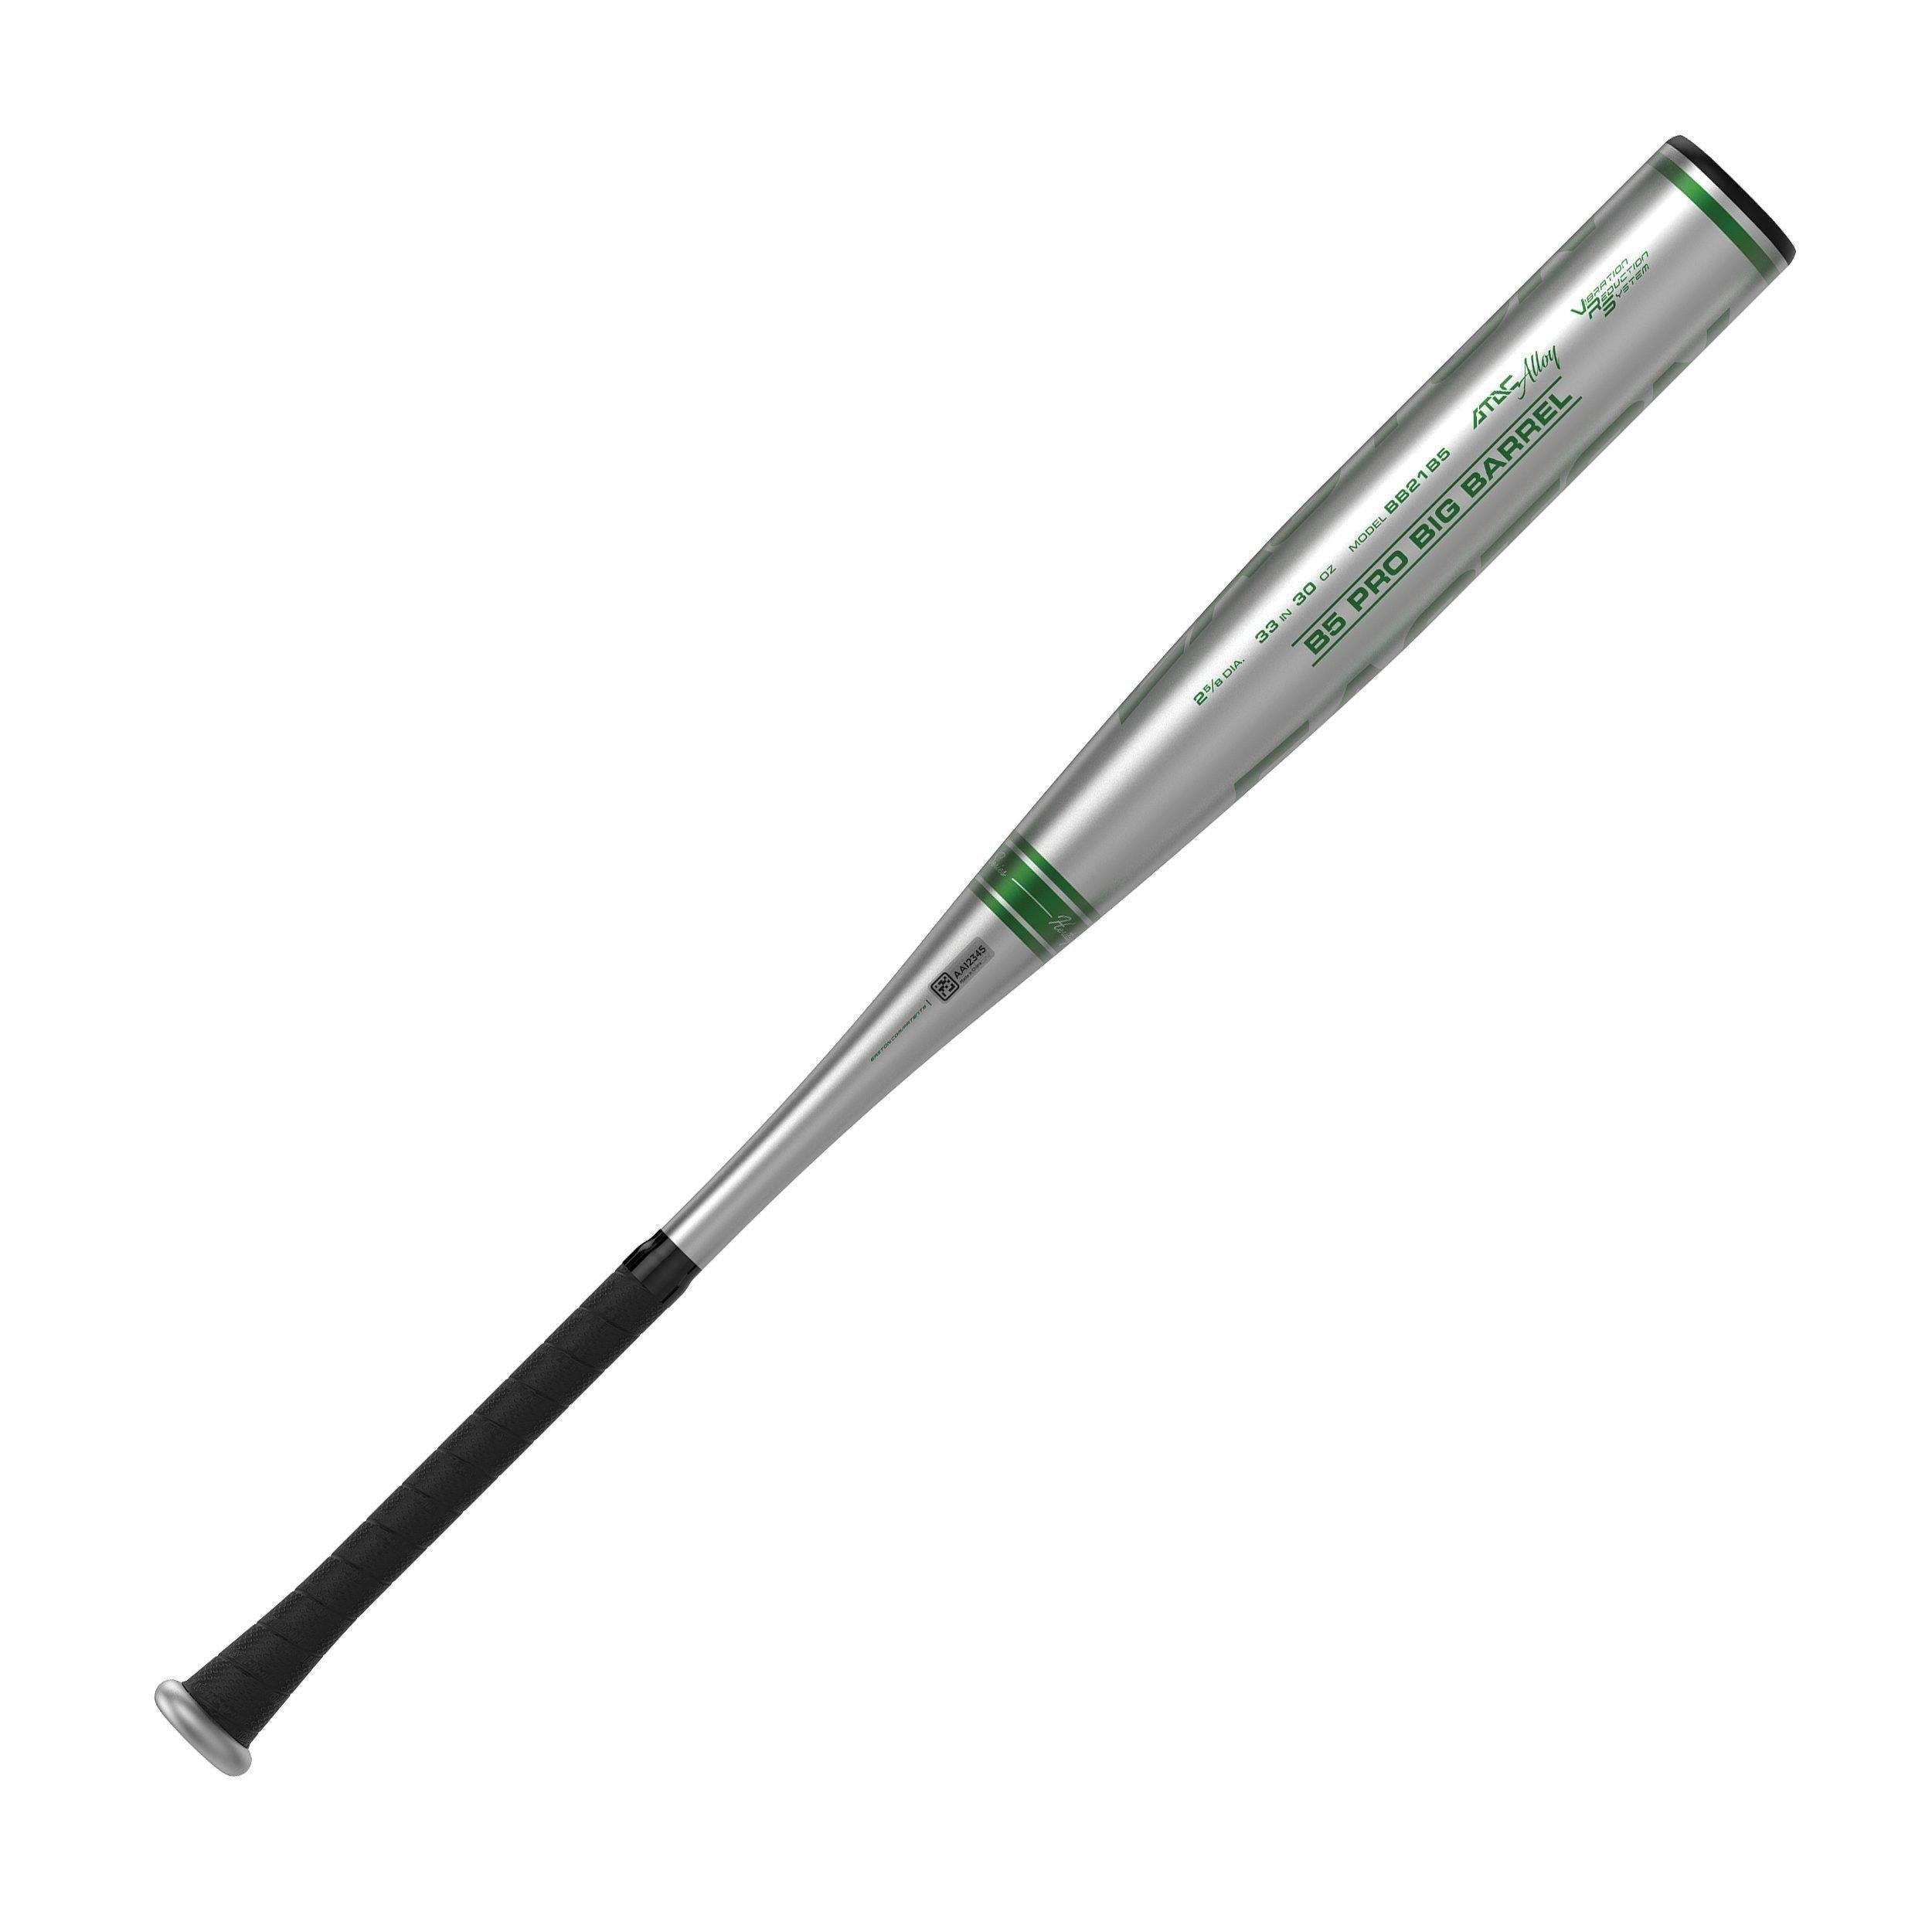 Easton - B5 Pro Big Barrel BBCOR (-3) Baseball Bat (BB21B5)